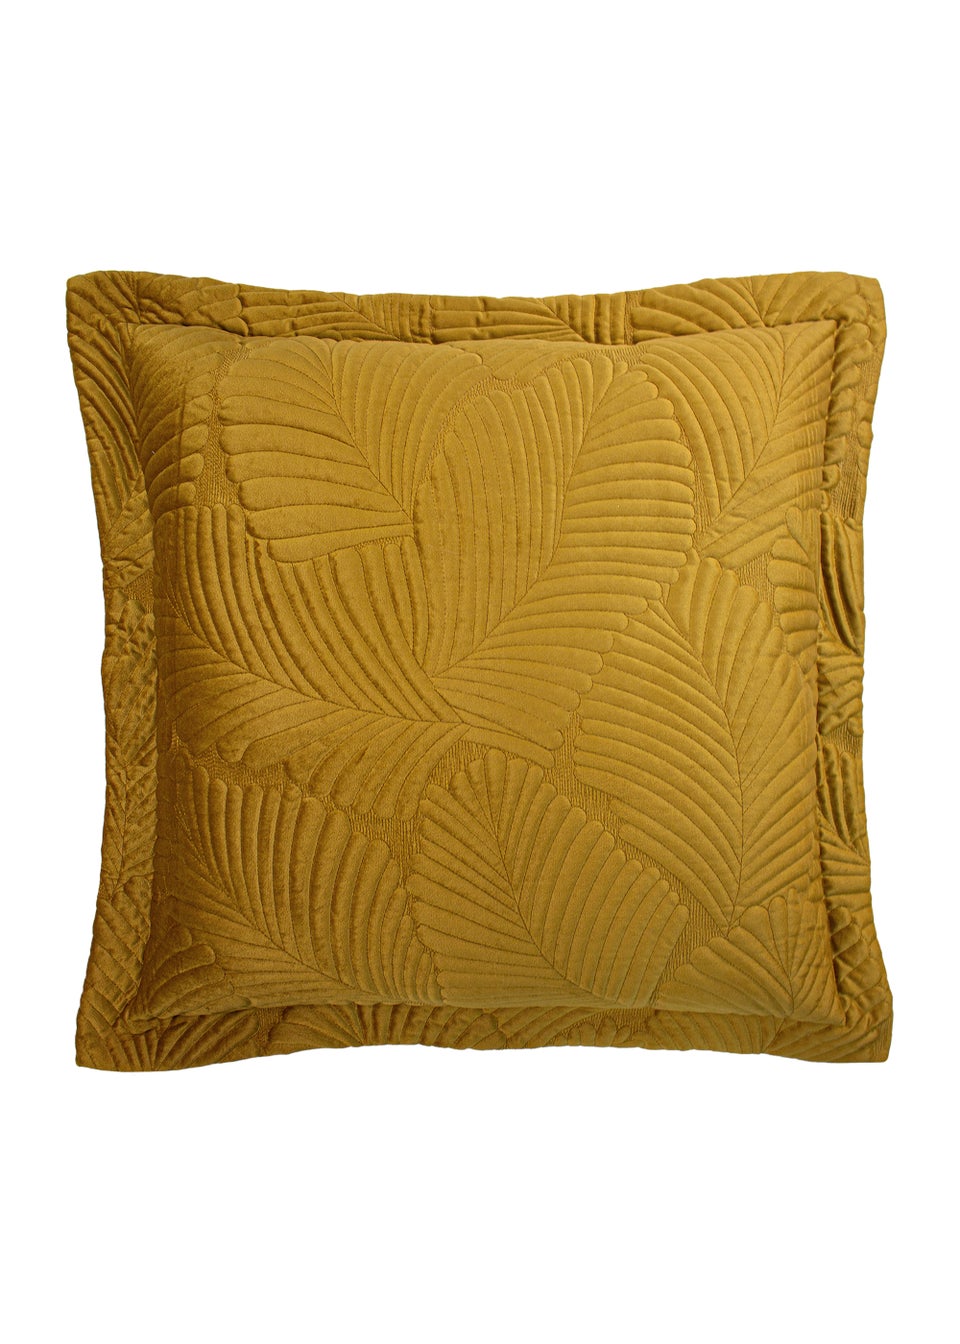 Paoletti Palmeria Quilted Velvet Cushion (60cm x 60cm x 8cm)